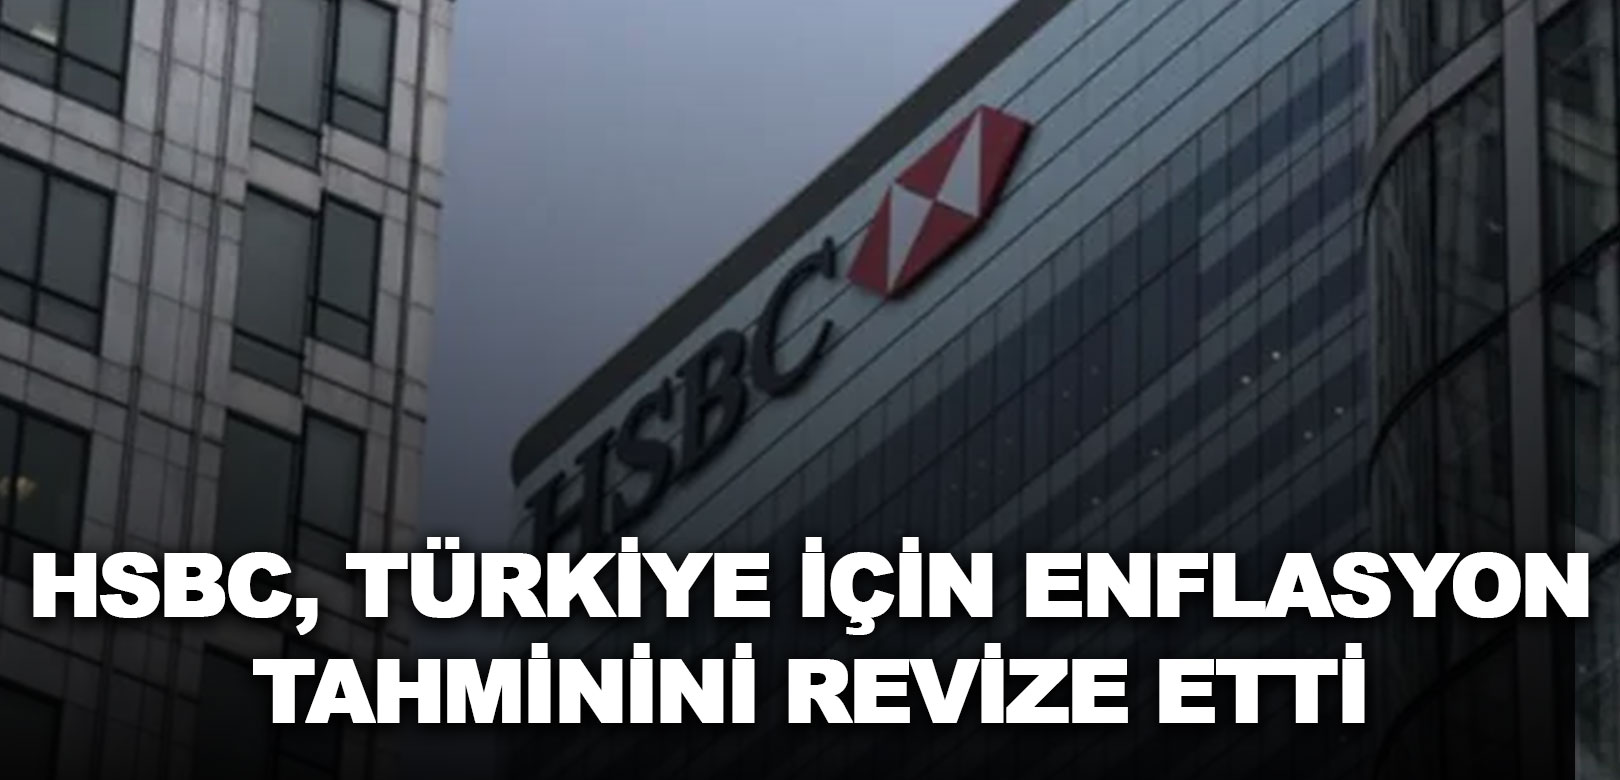 HSBC, Türkiye'nin enflasyon tahminini revize etti